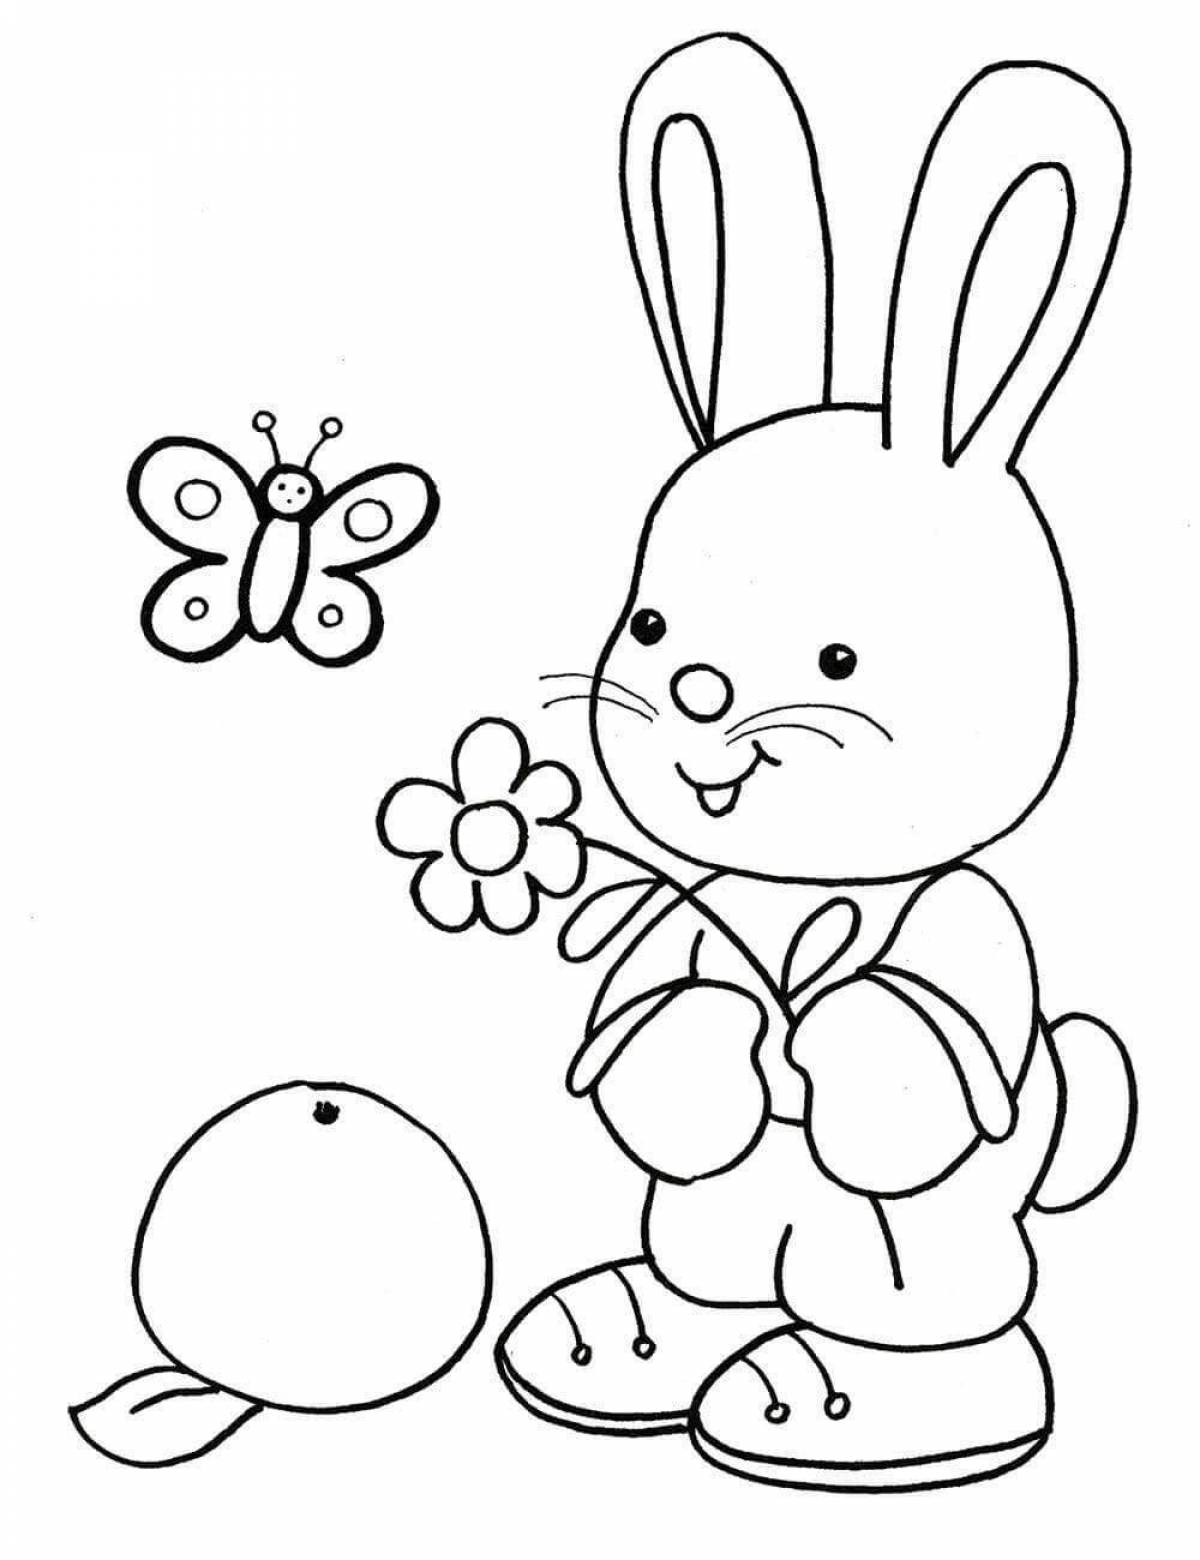 Причудливая раскраска зайца для детей 3-4 лет